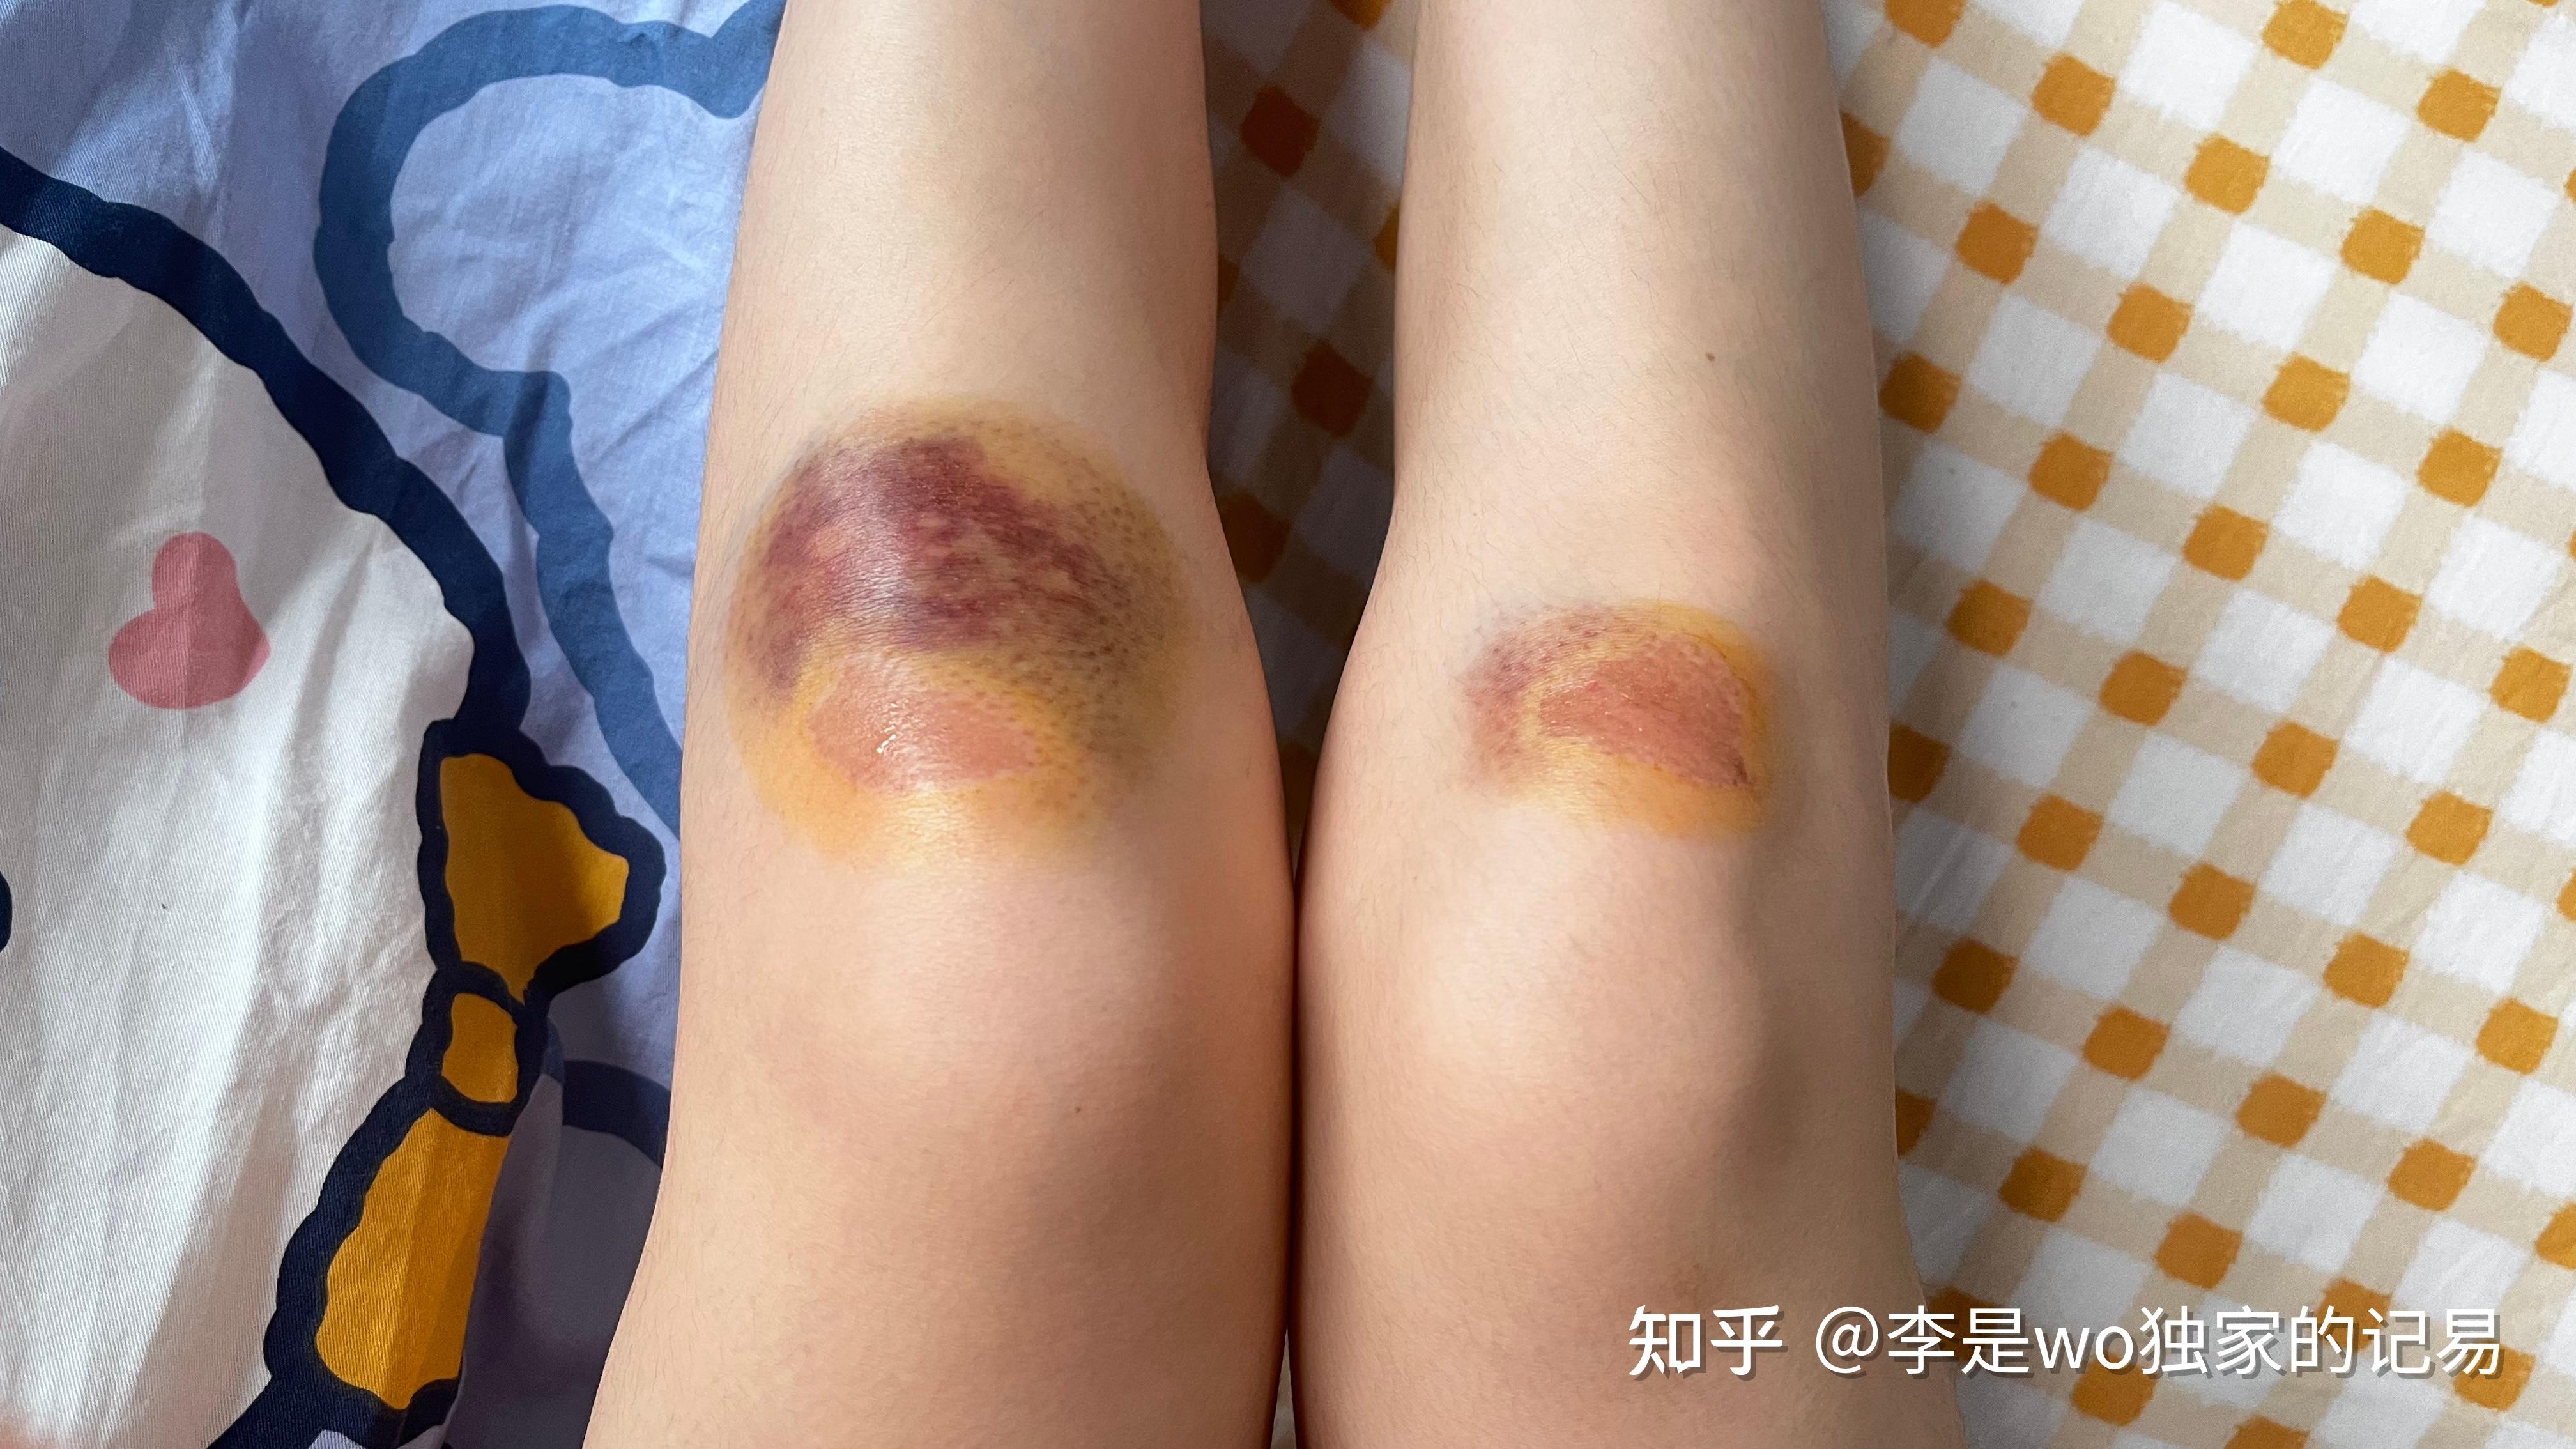 膝盖摔伤女孩子图片